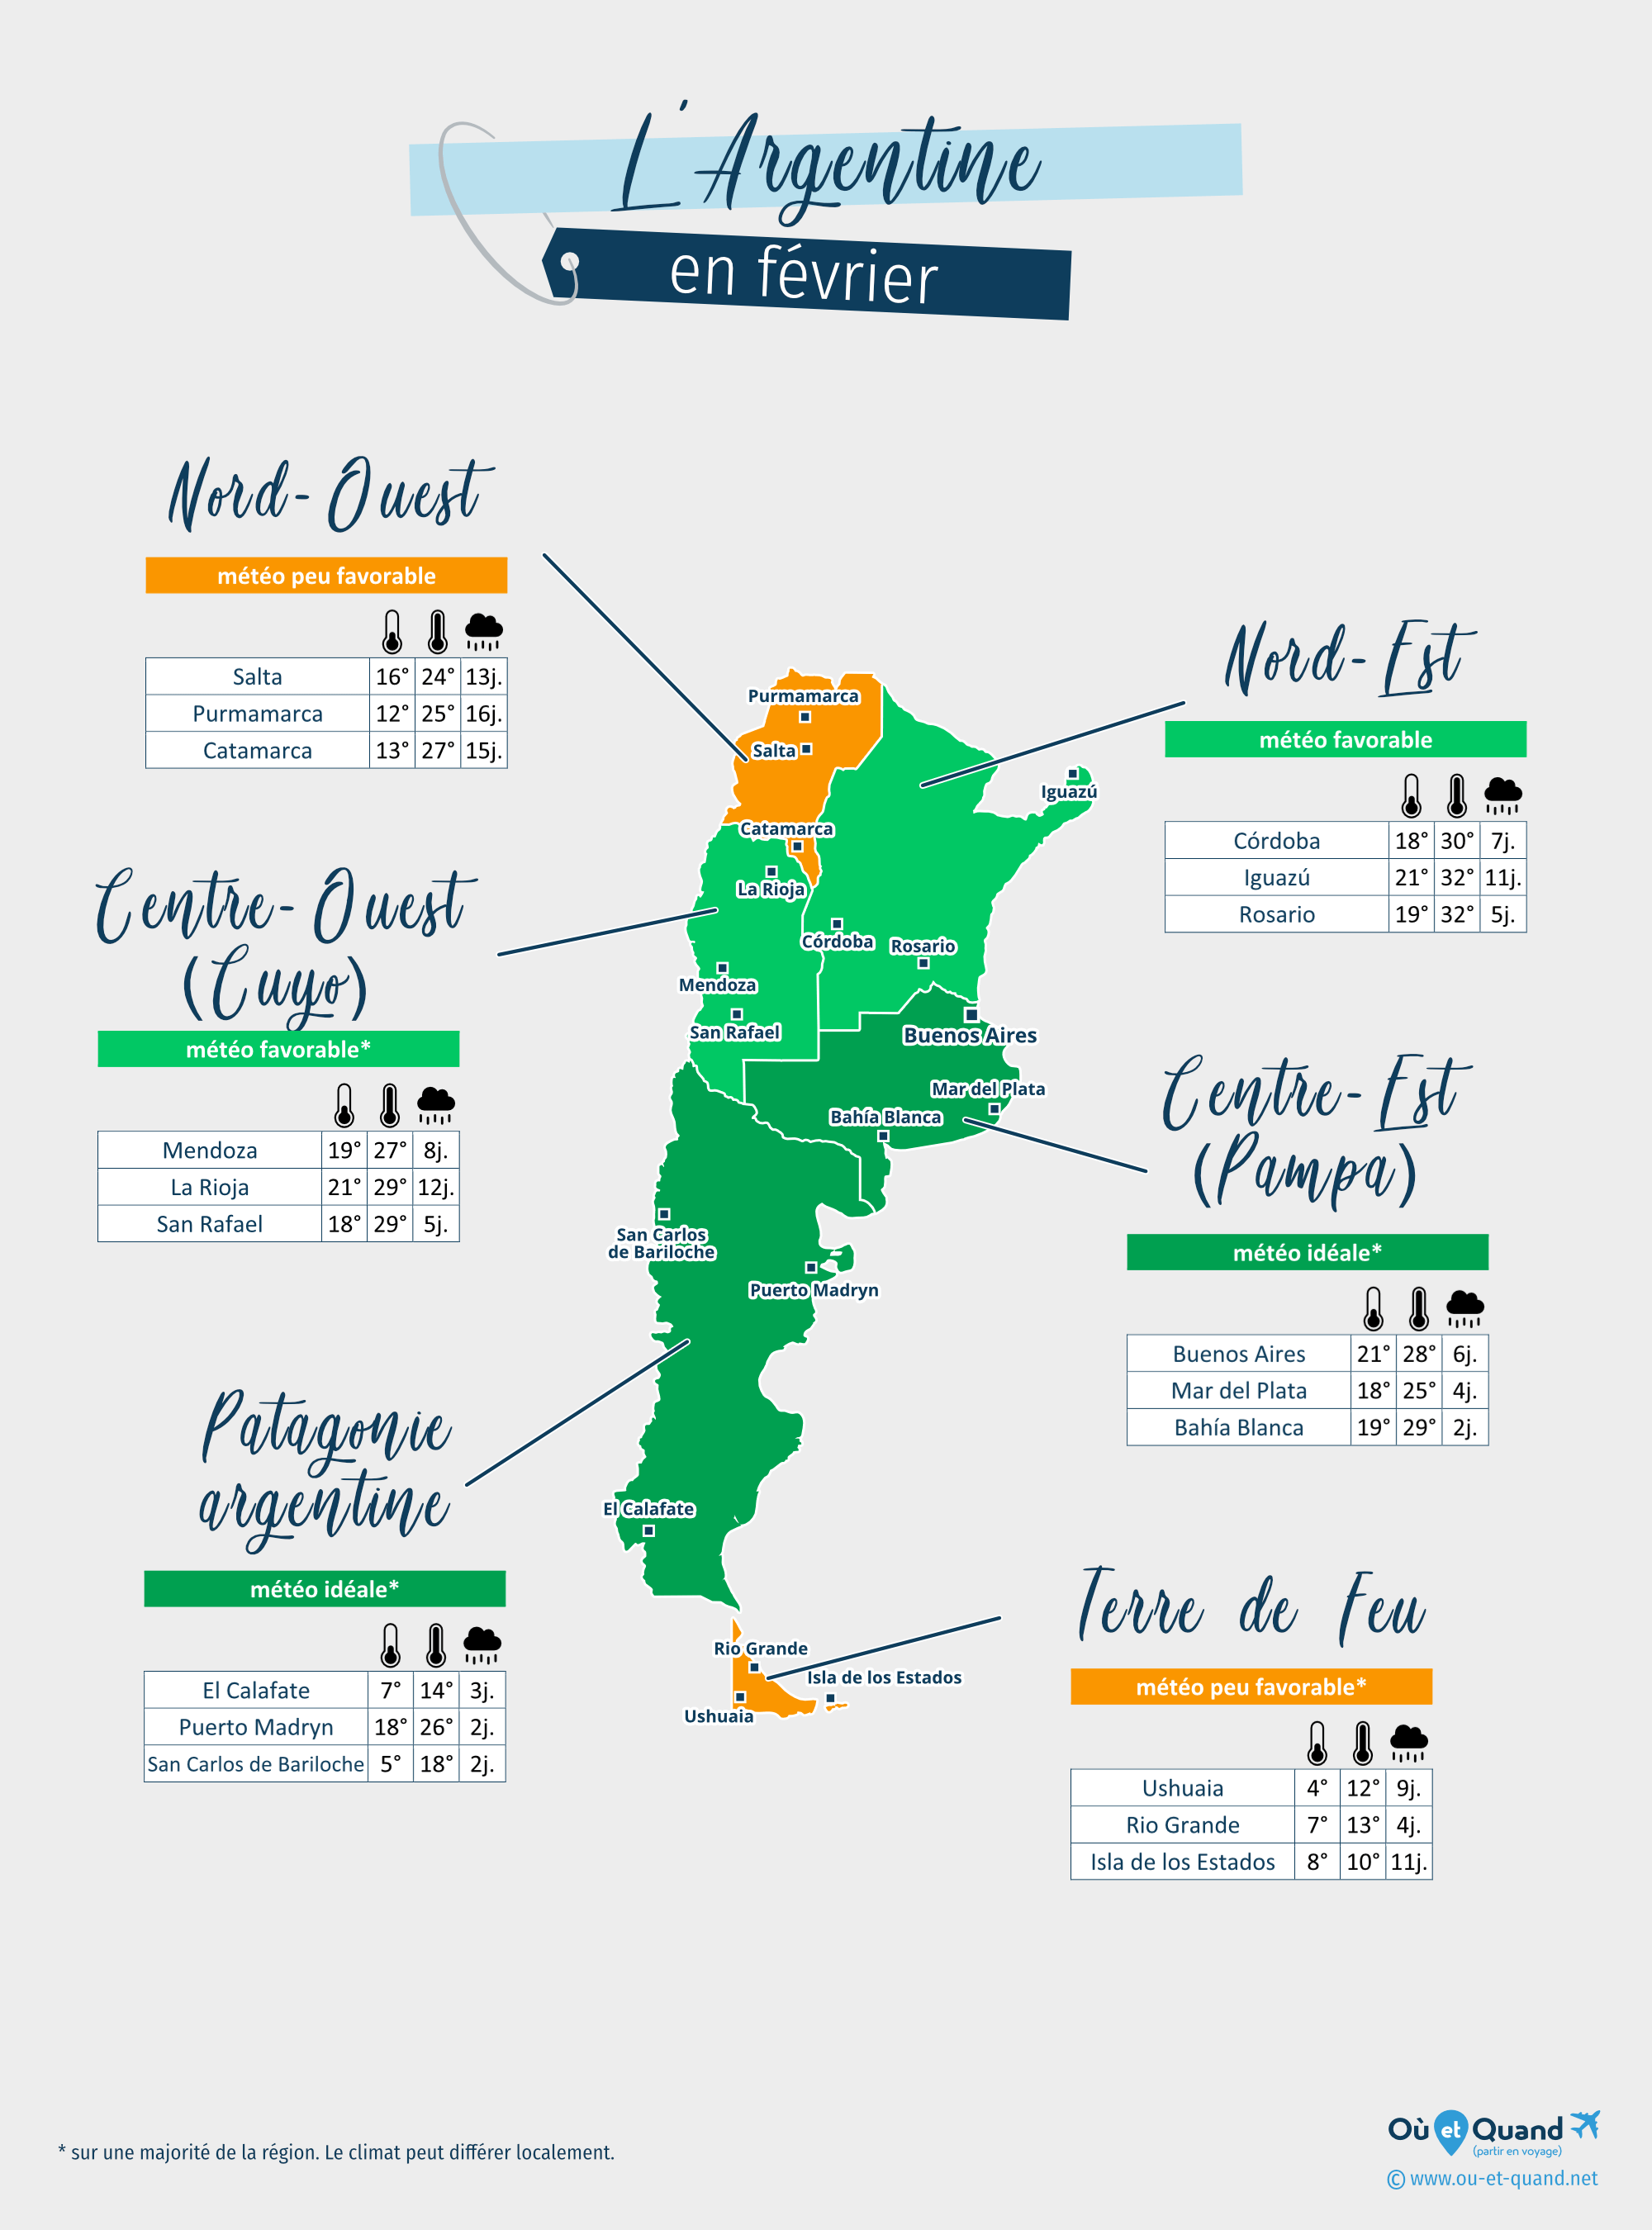 Carte de la météo en février dans les régions de l'Argentine